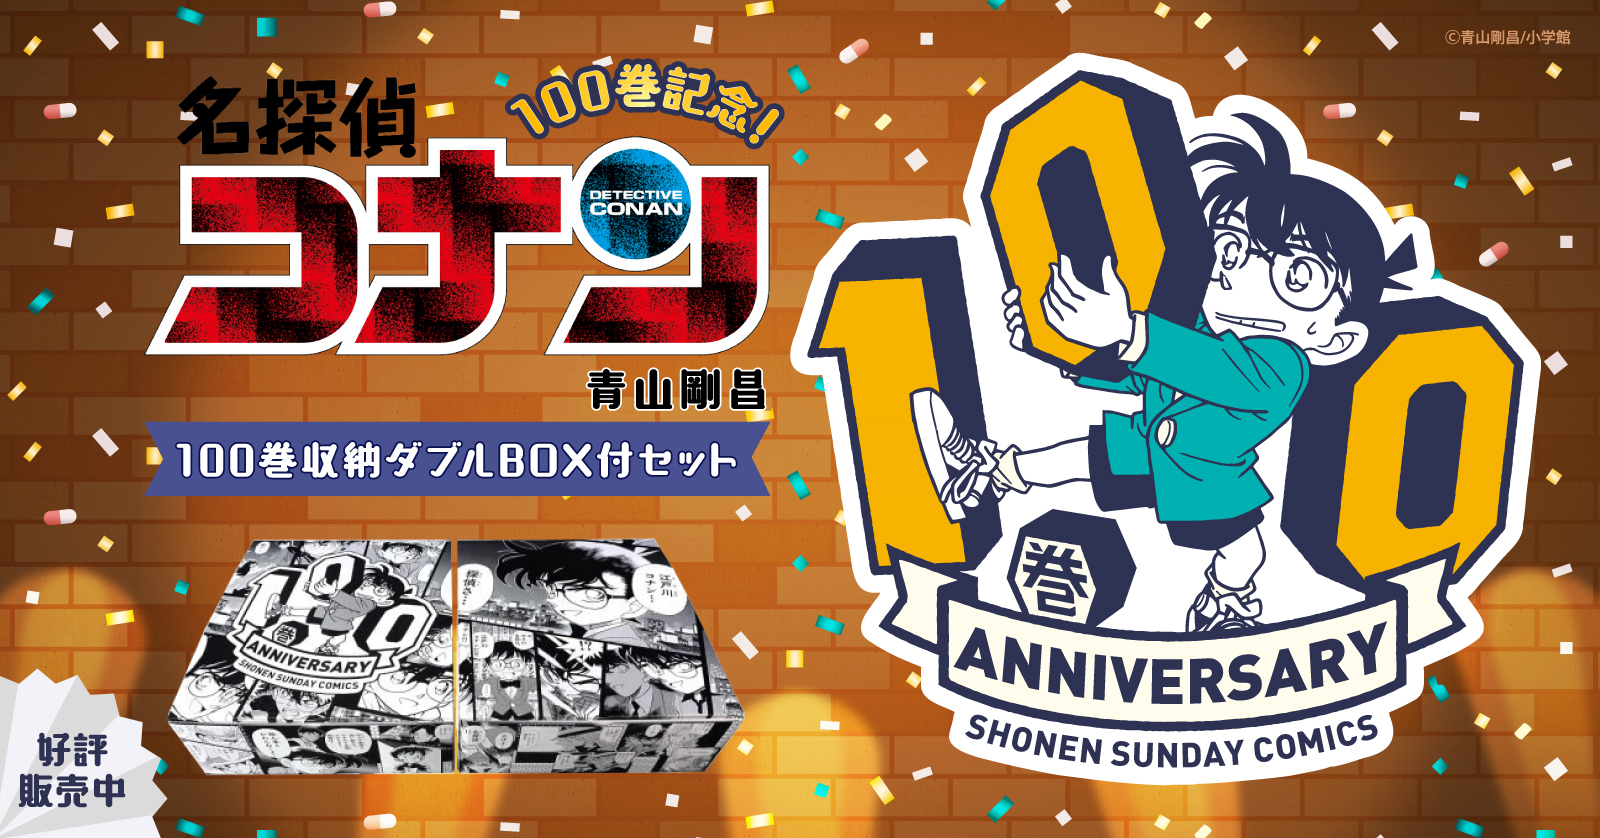 名探偵コナン (1-105巻 最新刊) +100巻記念オリジナル収納BOX2個付 